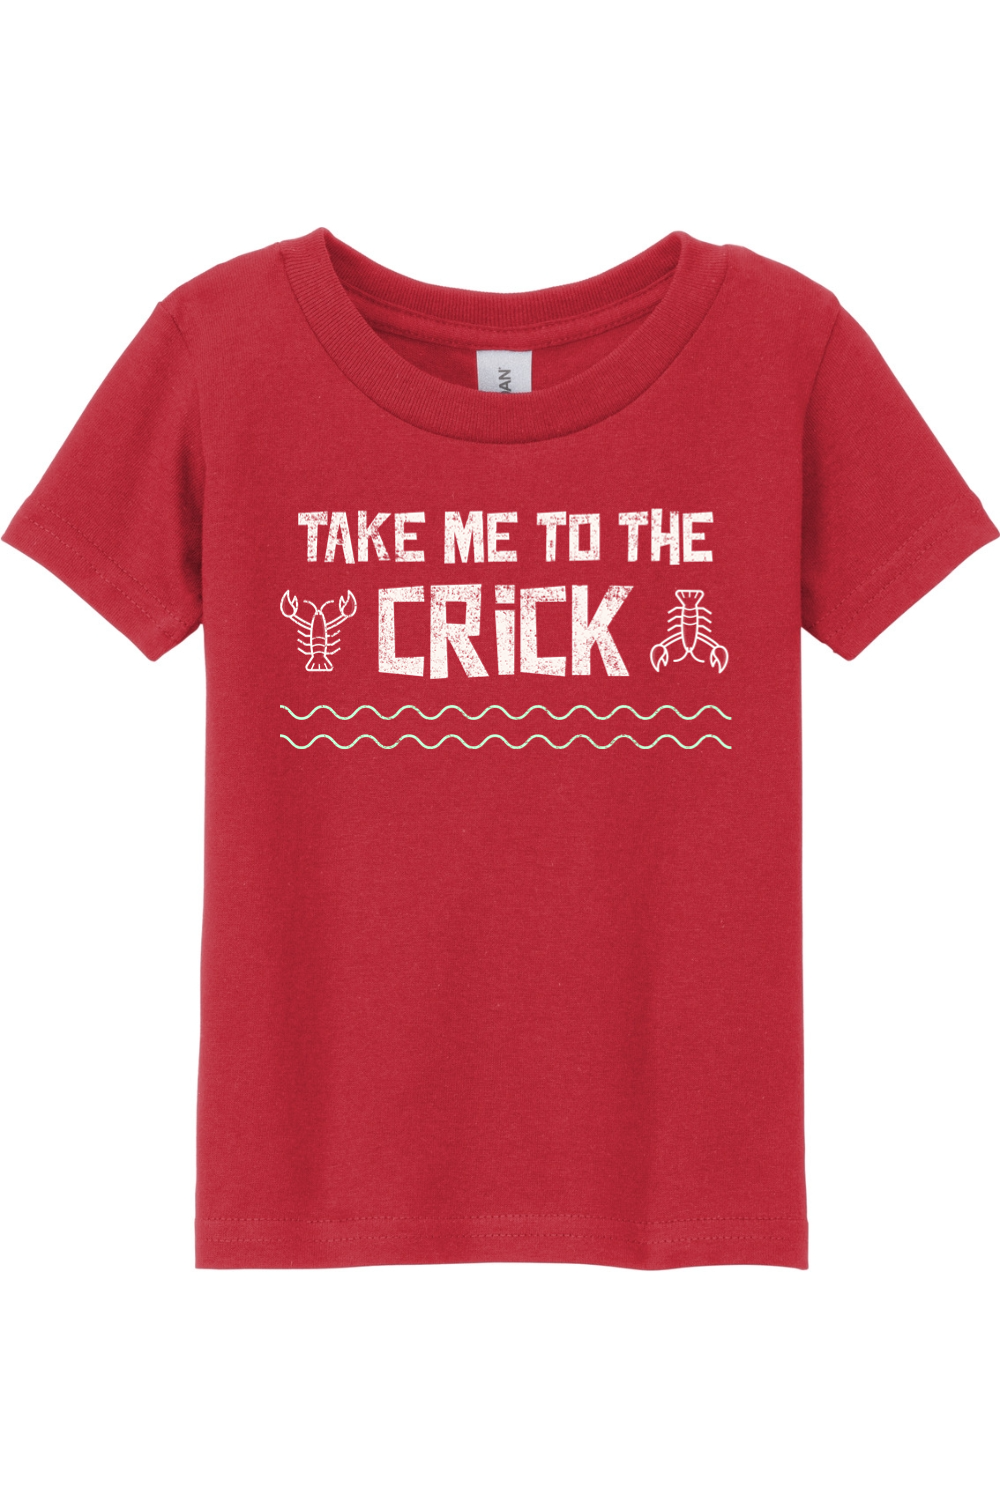 Take Me To The Crick - Toddler Tee - Yinzylvania